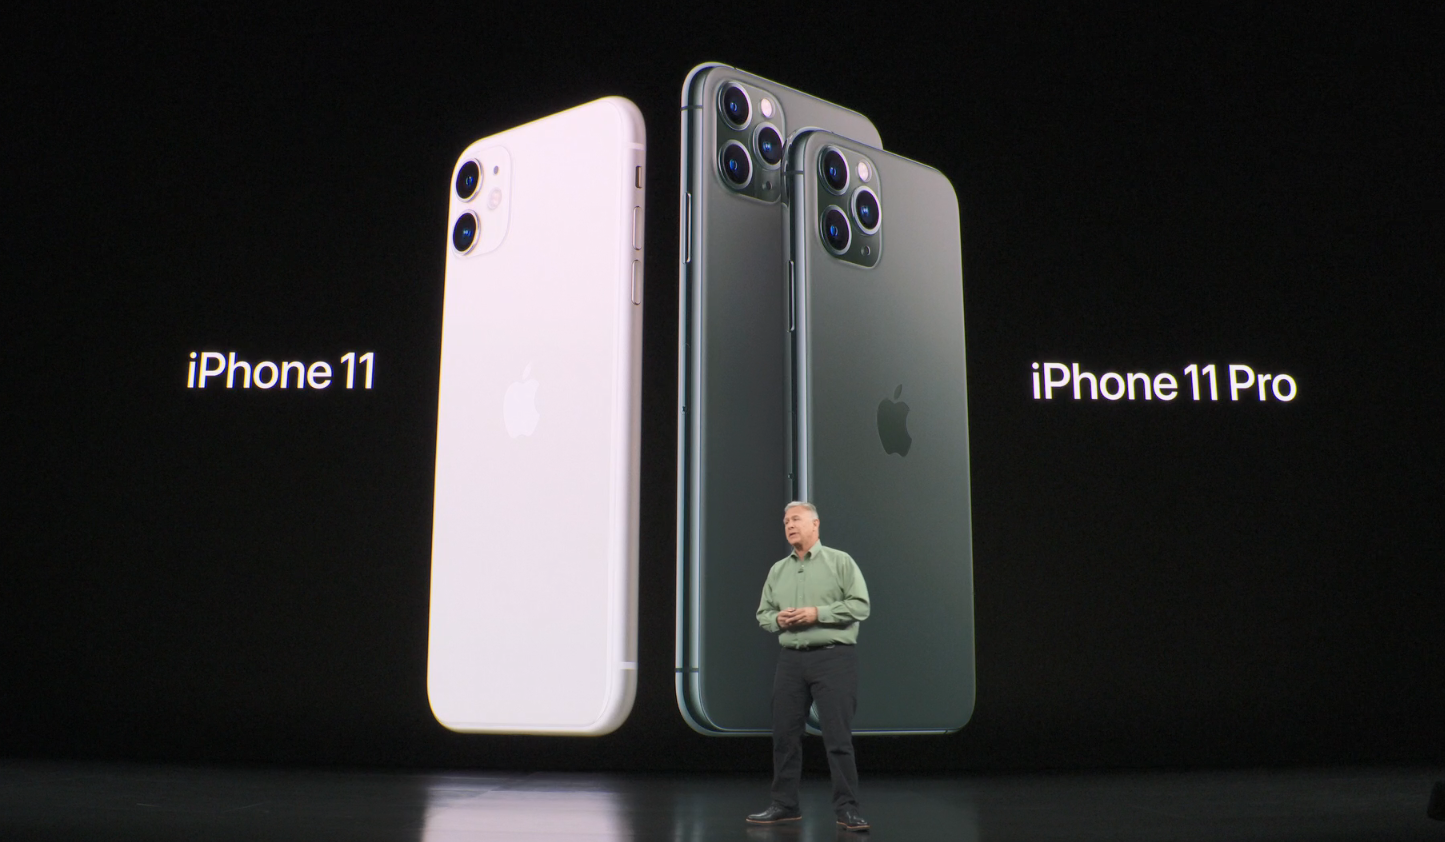  AppleiPhone 11 diresmikan pada hari Selasa